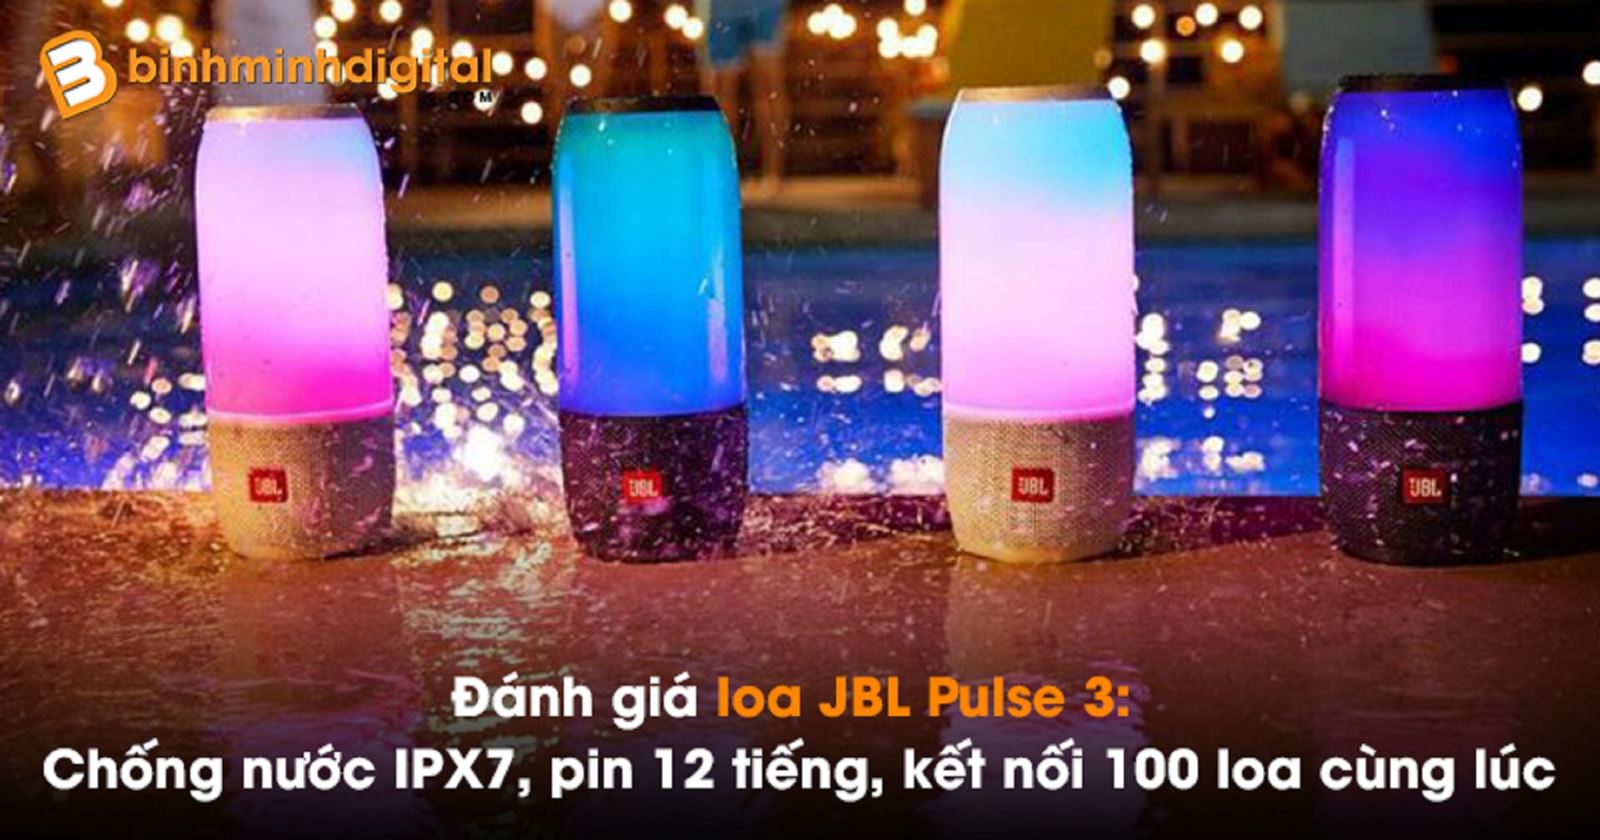 Đánh giá loa JBL Pulse 3: Chống nước IPX7, pin 12 tiếng, kết nối 100 loa cùng lúc